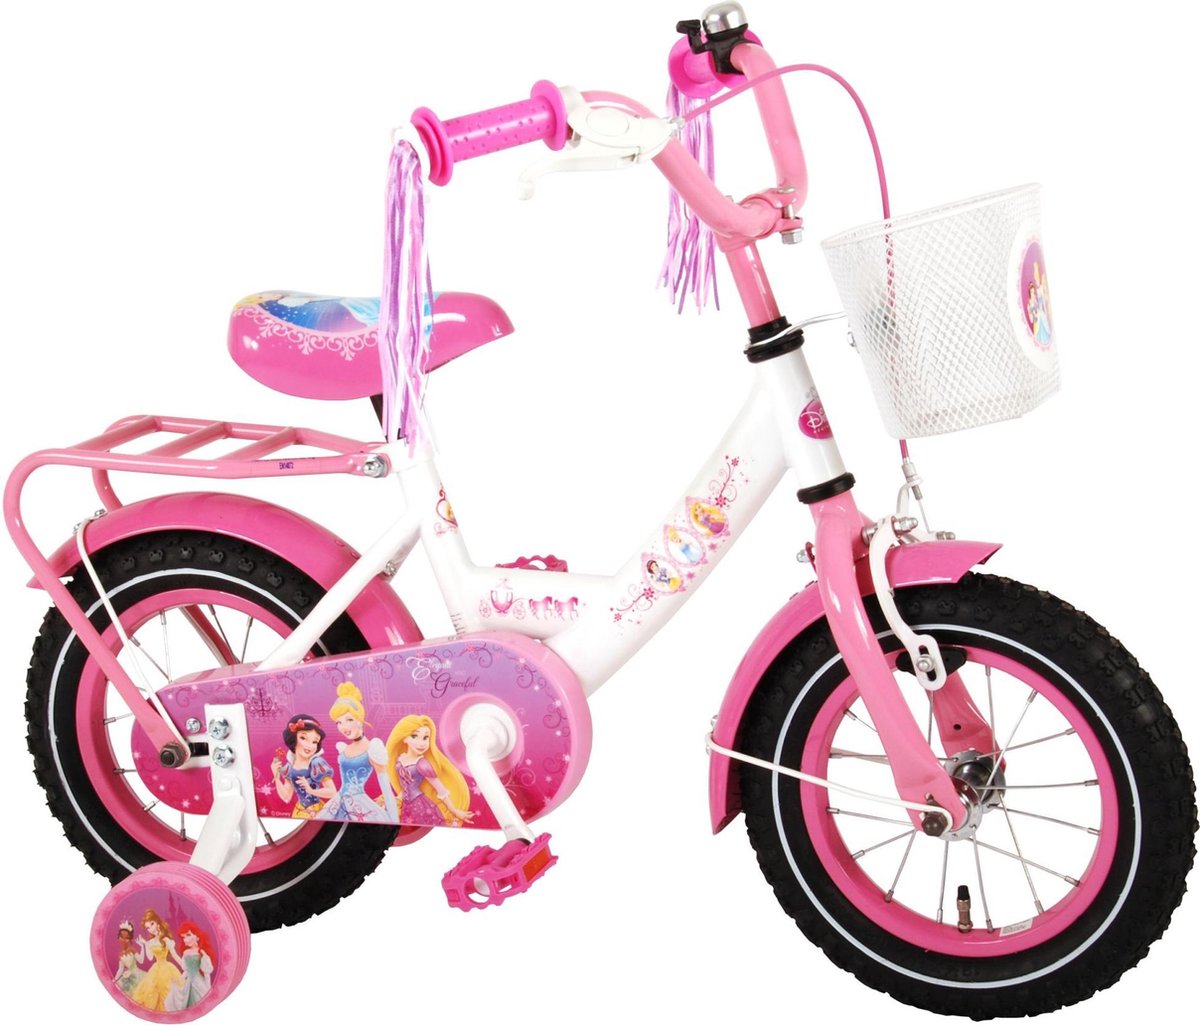 Volare Disney Princess Kinderfiets Meisjes 12 inch Roze 95% afgemonteerd - Foto 2